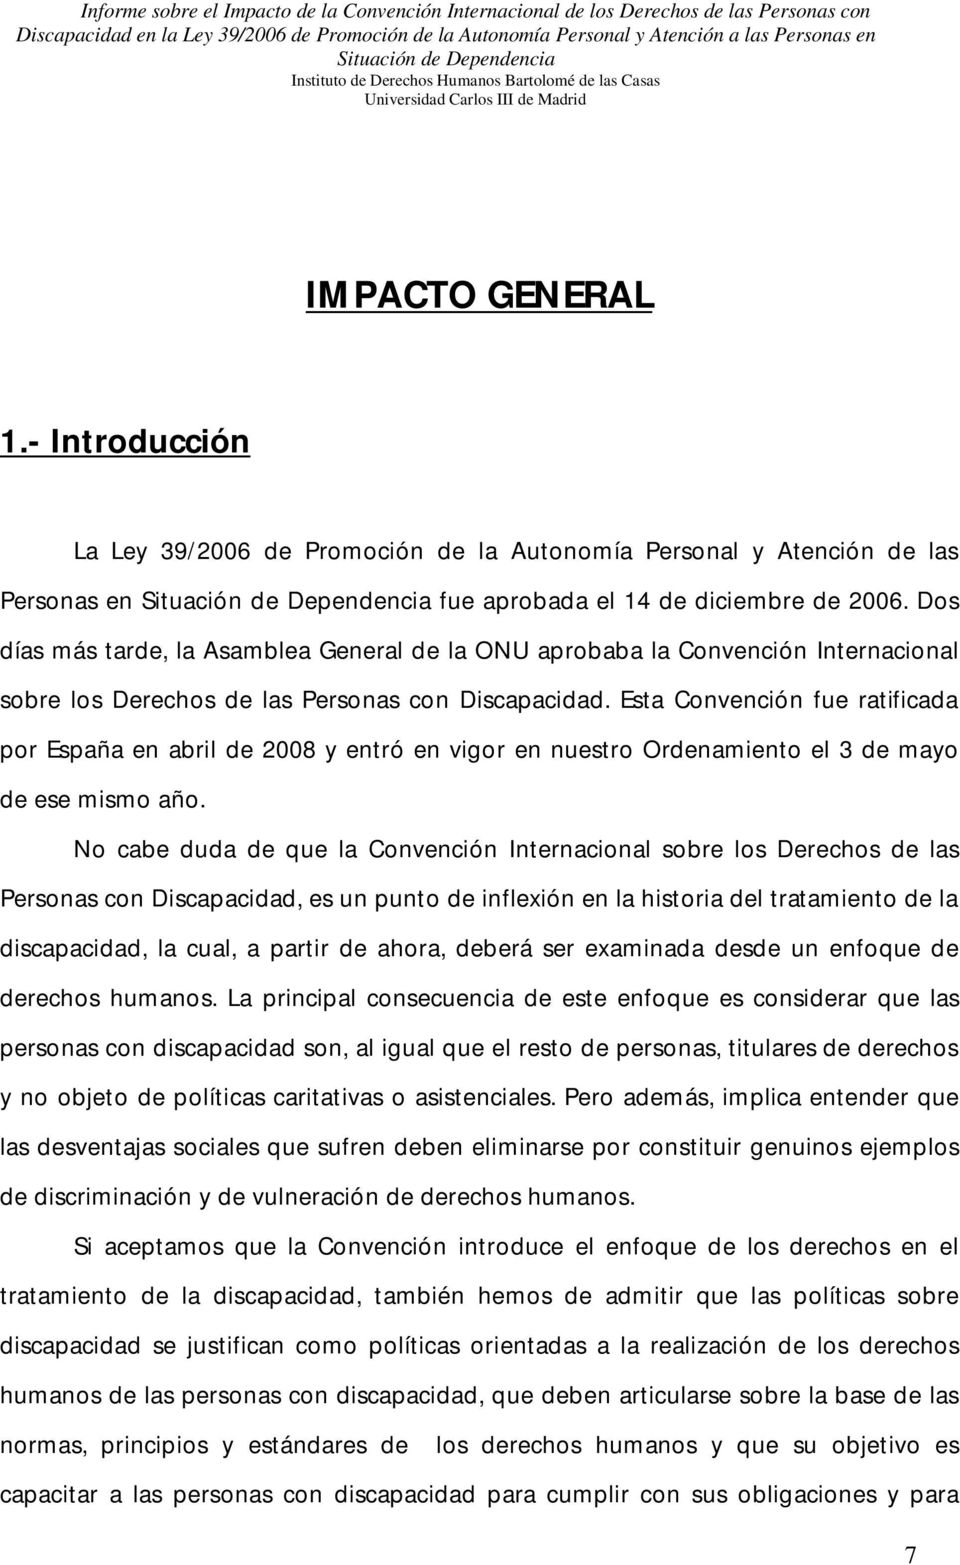 Esta Convención fue ratificada por España en abril de 2008 y entró en vigor en nuestro Ordenamiento el 3 de mayo de ese mismo año.